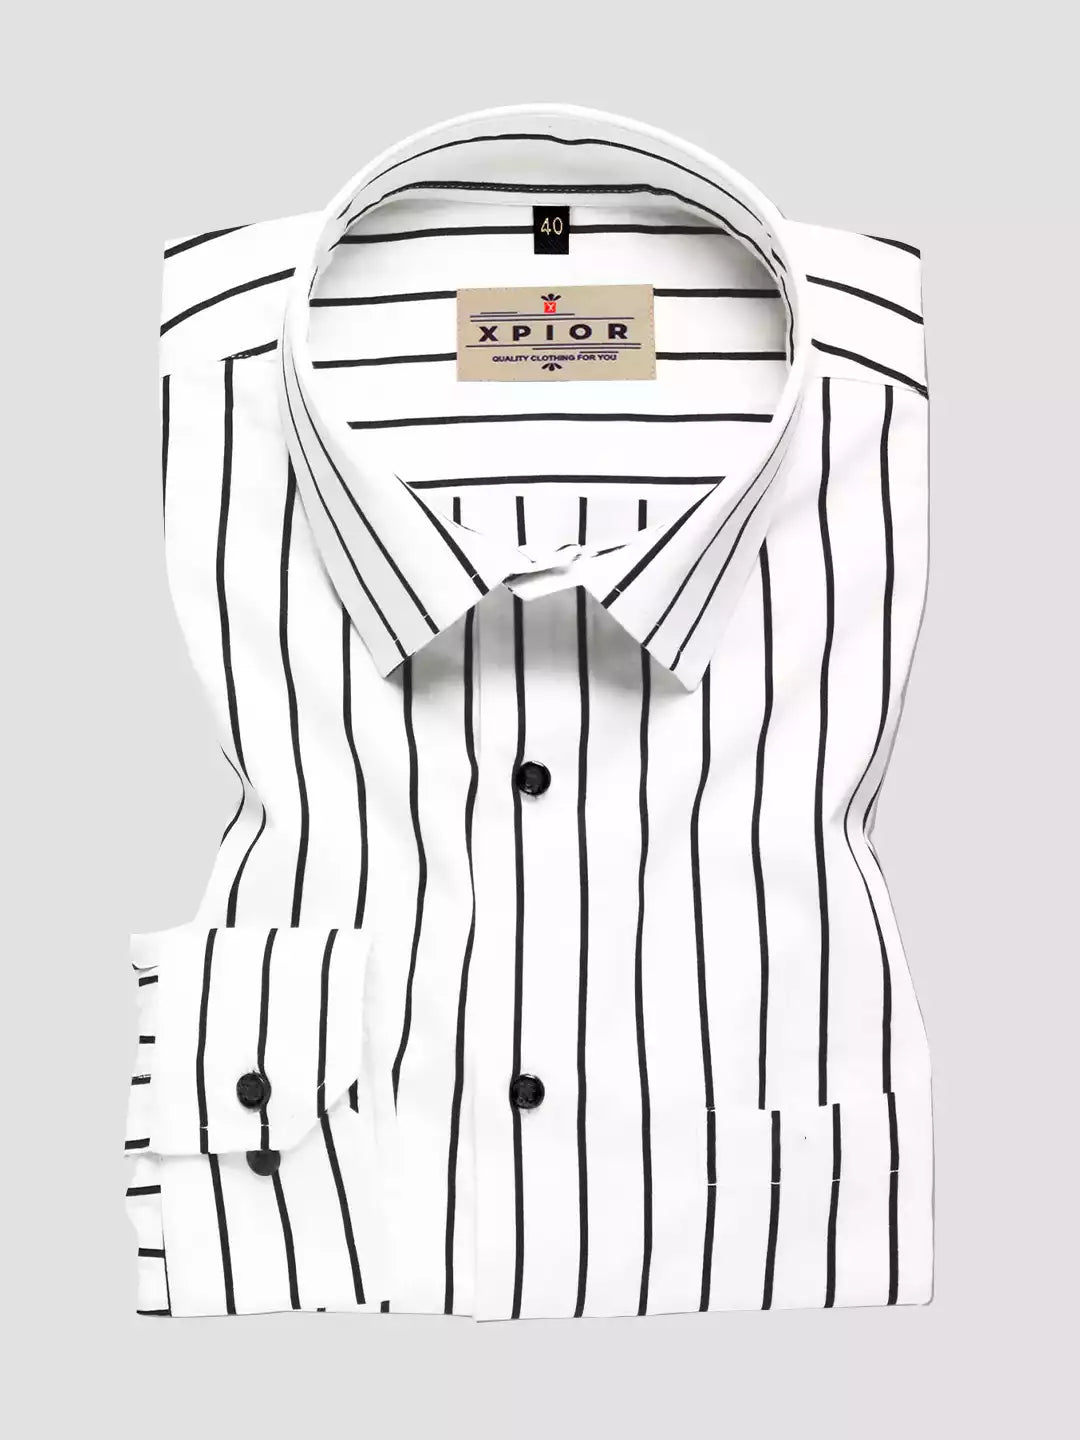 Black and White Lining Office Shirt for Men Full Sleeves